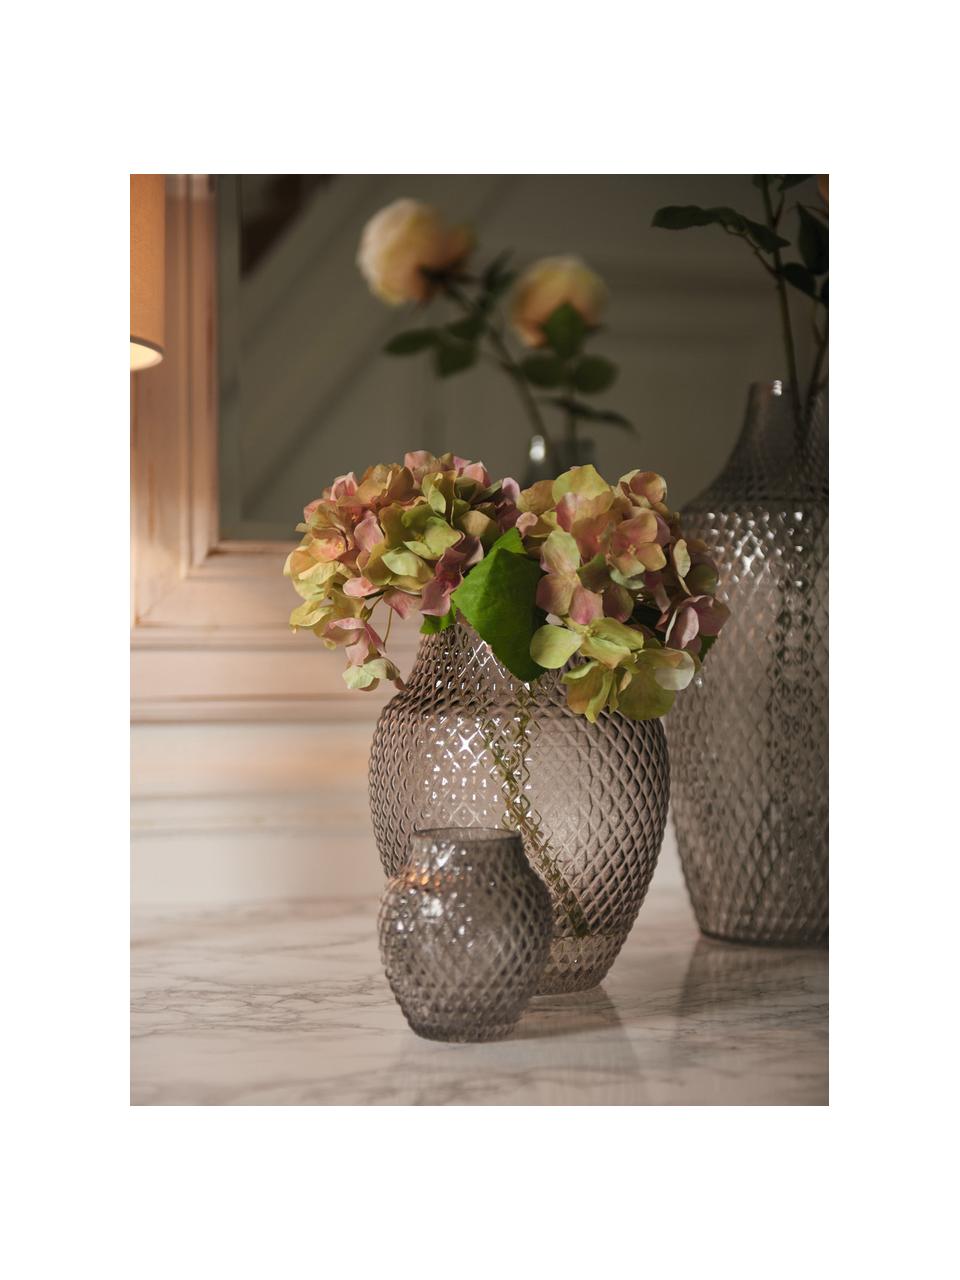 Ručně vyrobená skleněná váza Poesia, V 23 cm, Sklo, Světle šedá, transparentní, Ø 19 cm, V 23 cm